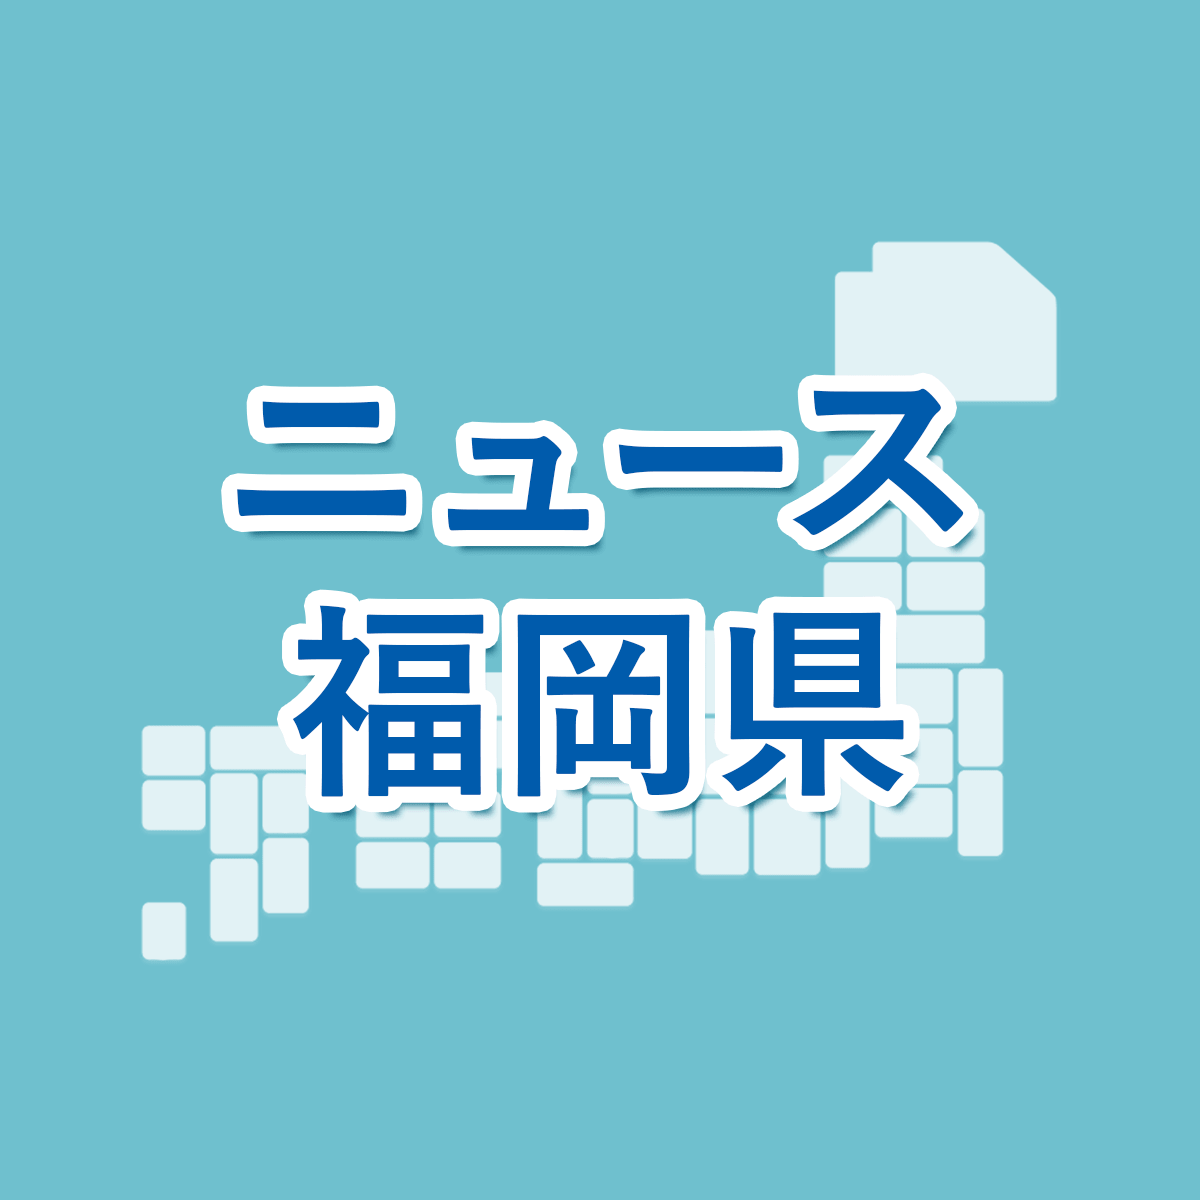 倍率 大阪 2021 私立 高校 府